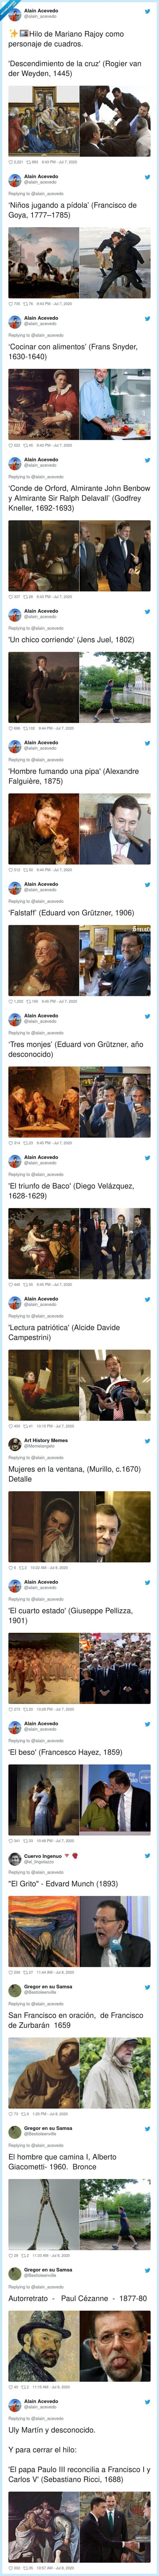 624456 - El mejor hilo que verás hoy: obras de arte que encuentran paralelismo con Mariano Rajoy, por @alain_acevedo